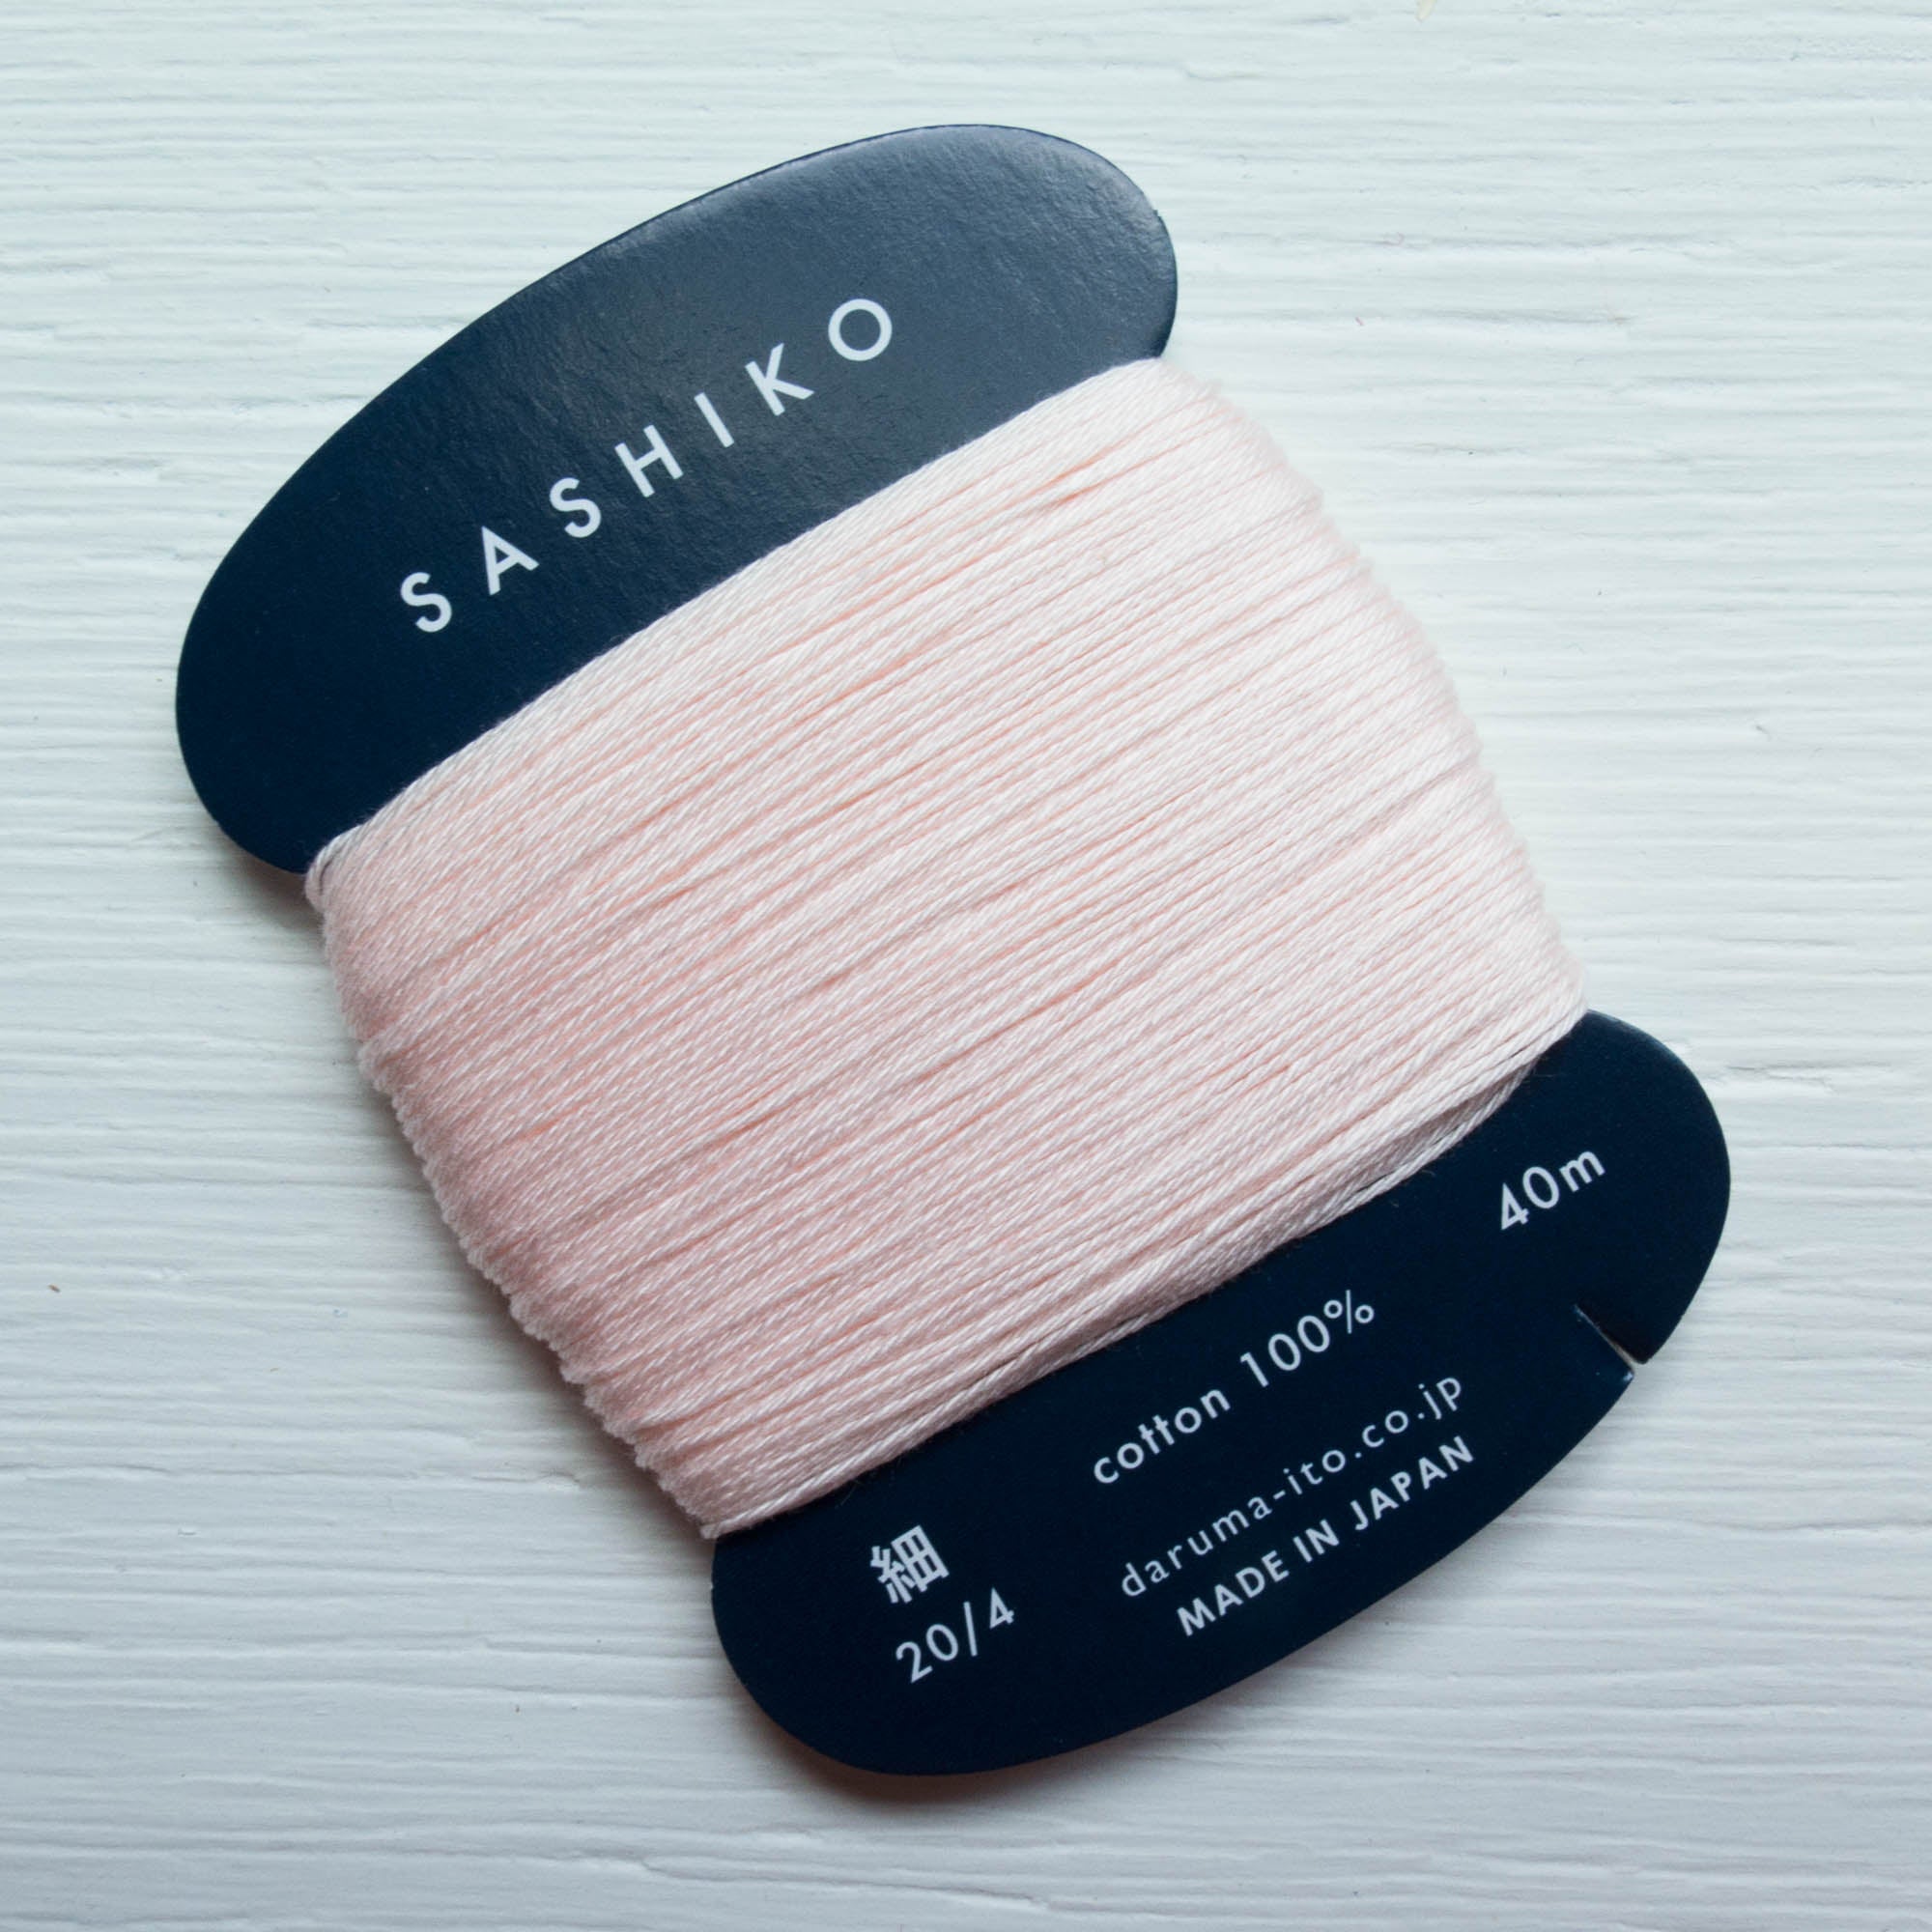 ORIM - Daruma - Sashiko Cotton Thread 20/4 - 0209 - Cherry Blossom